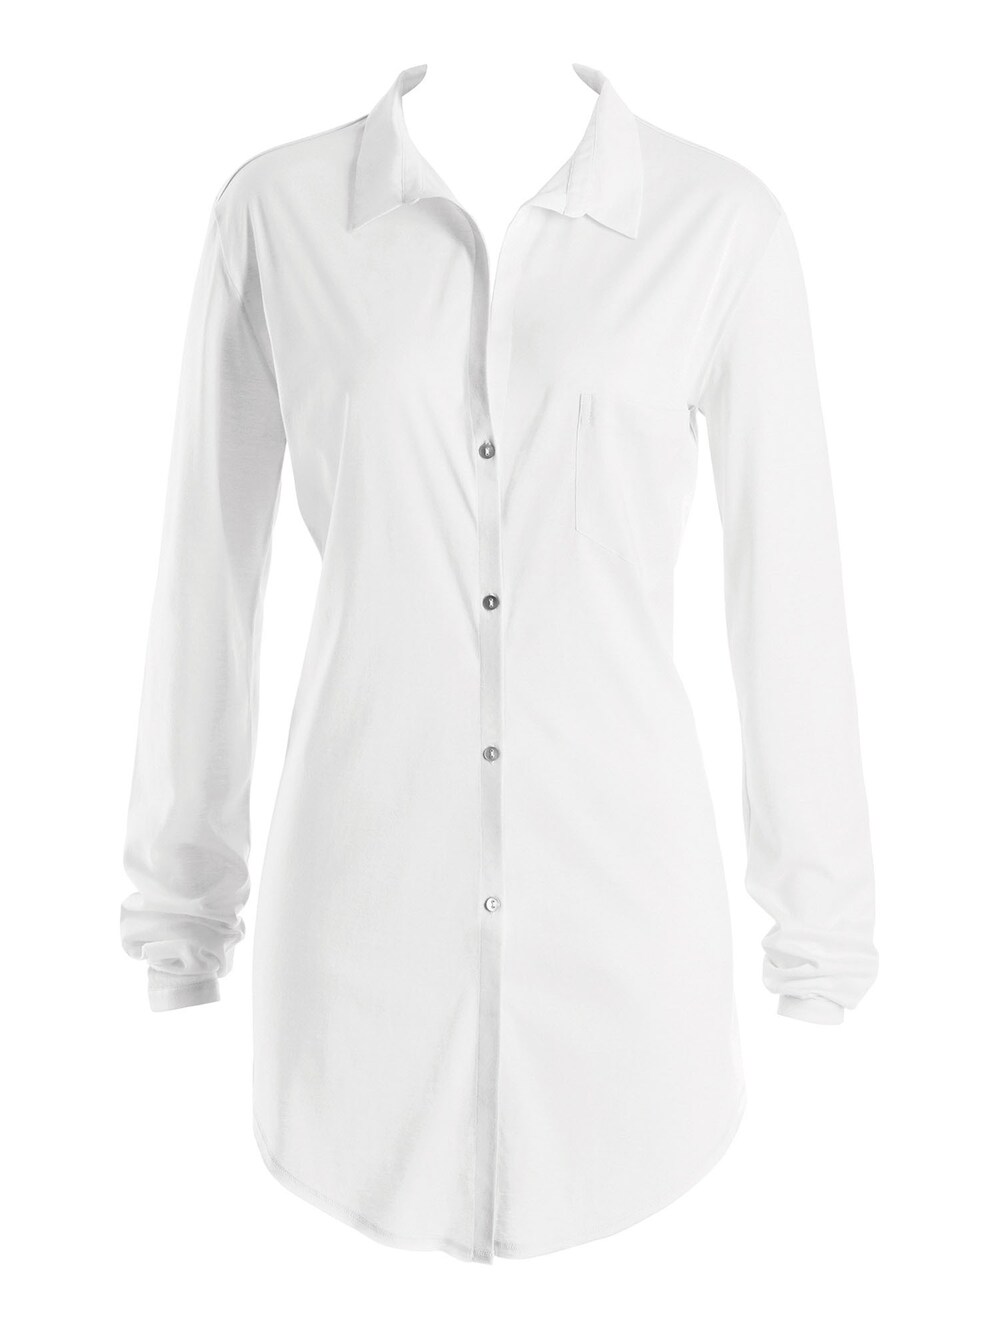 Ночная рубашка Hanro Cotton Deluxe 90cm, белый фото